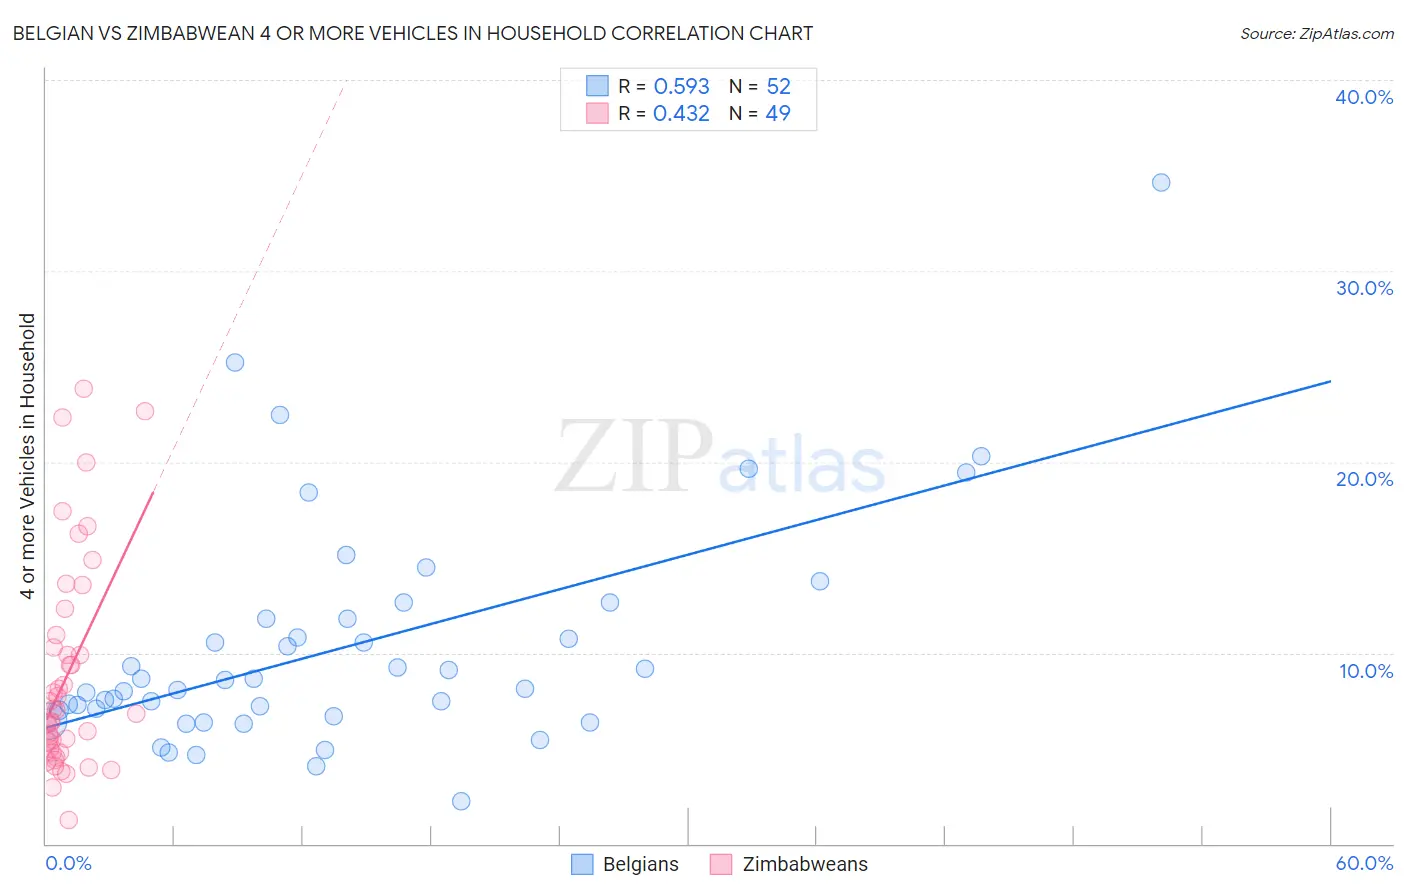 Belgian vs Zimbabwean 4 or more Vehicles in Household